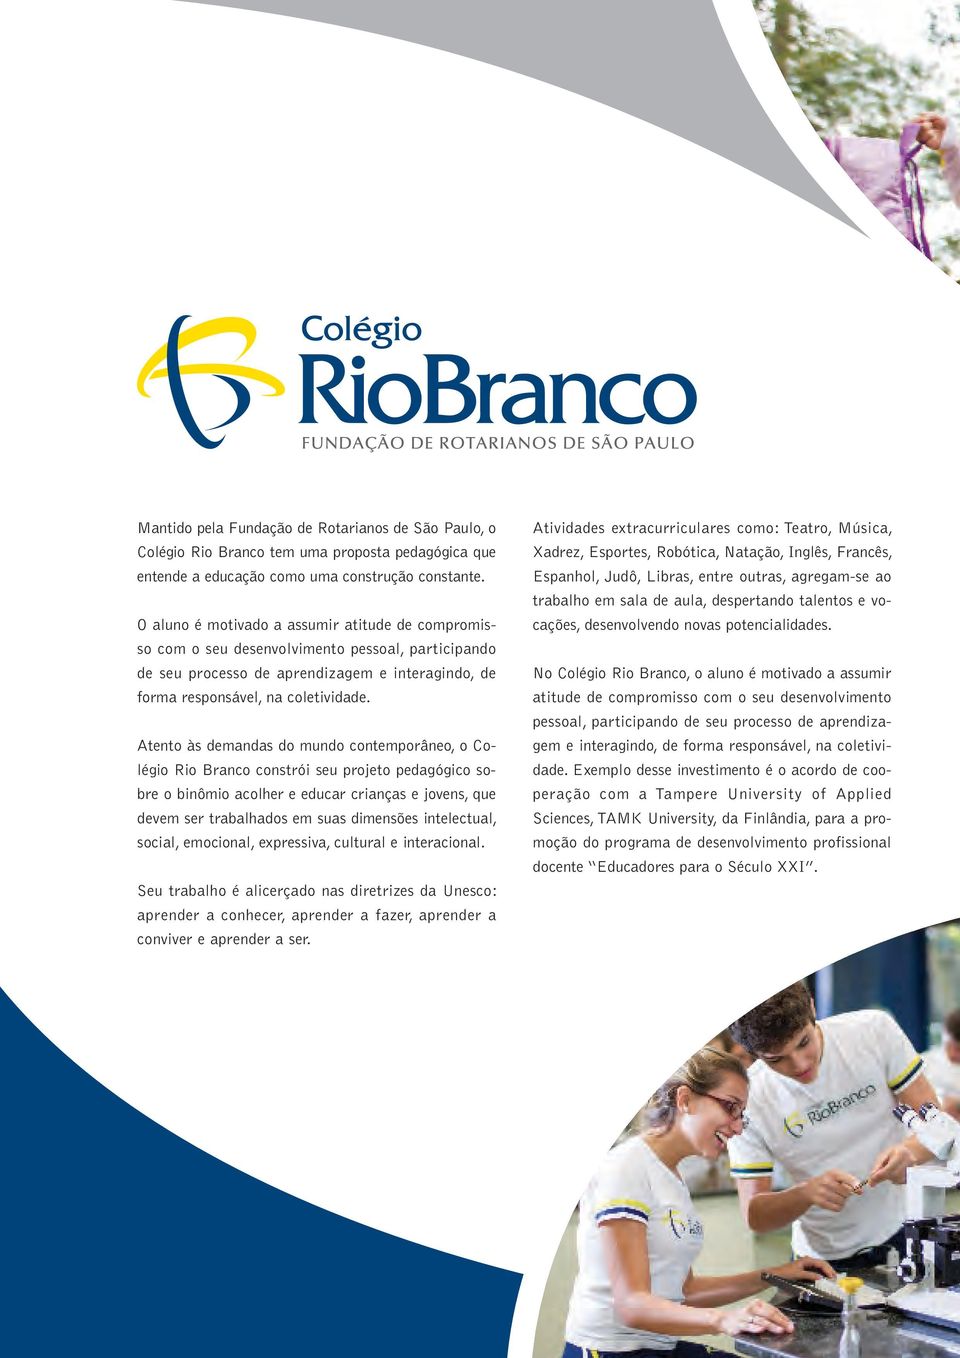 Atento às demandas do mundo contemporâneo, o Colégio Rio Branco constrói seu projeto pedagógico sobre o binômio acolher e educar crianças e jovens, que devem ser trabalhados em suas dimensões